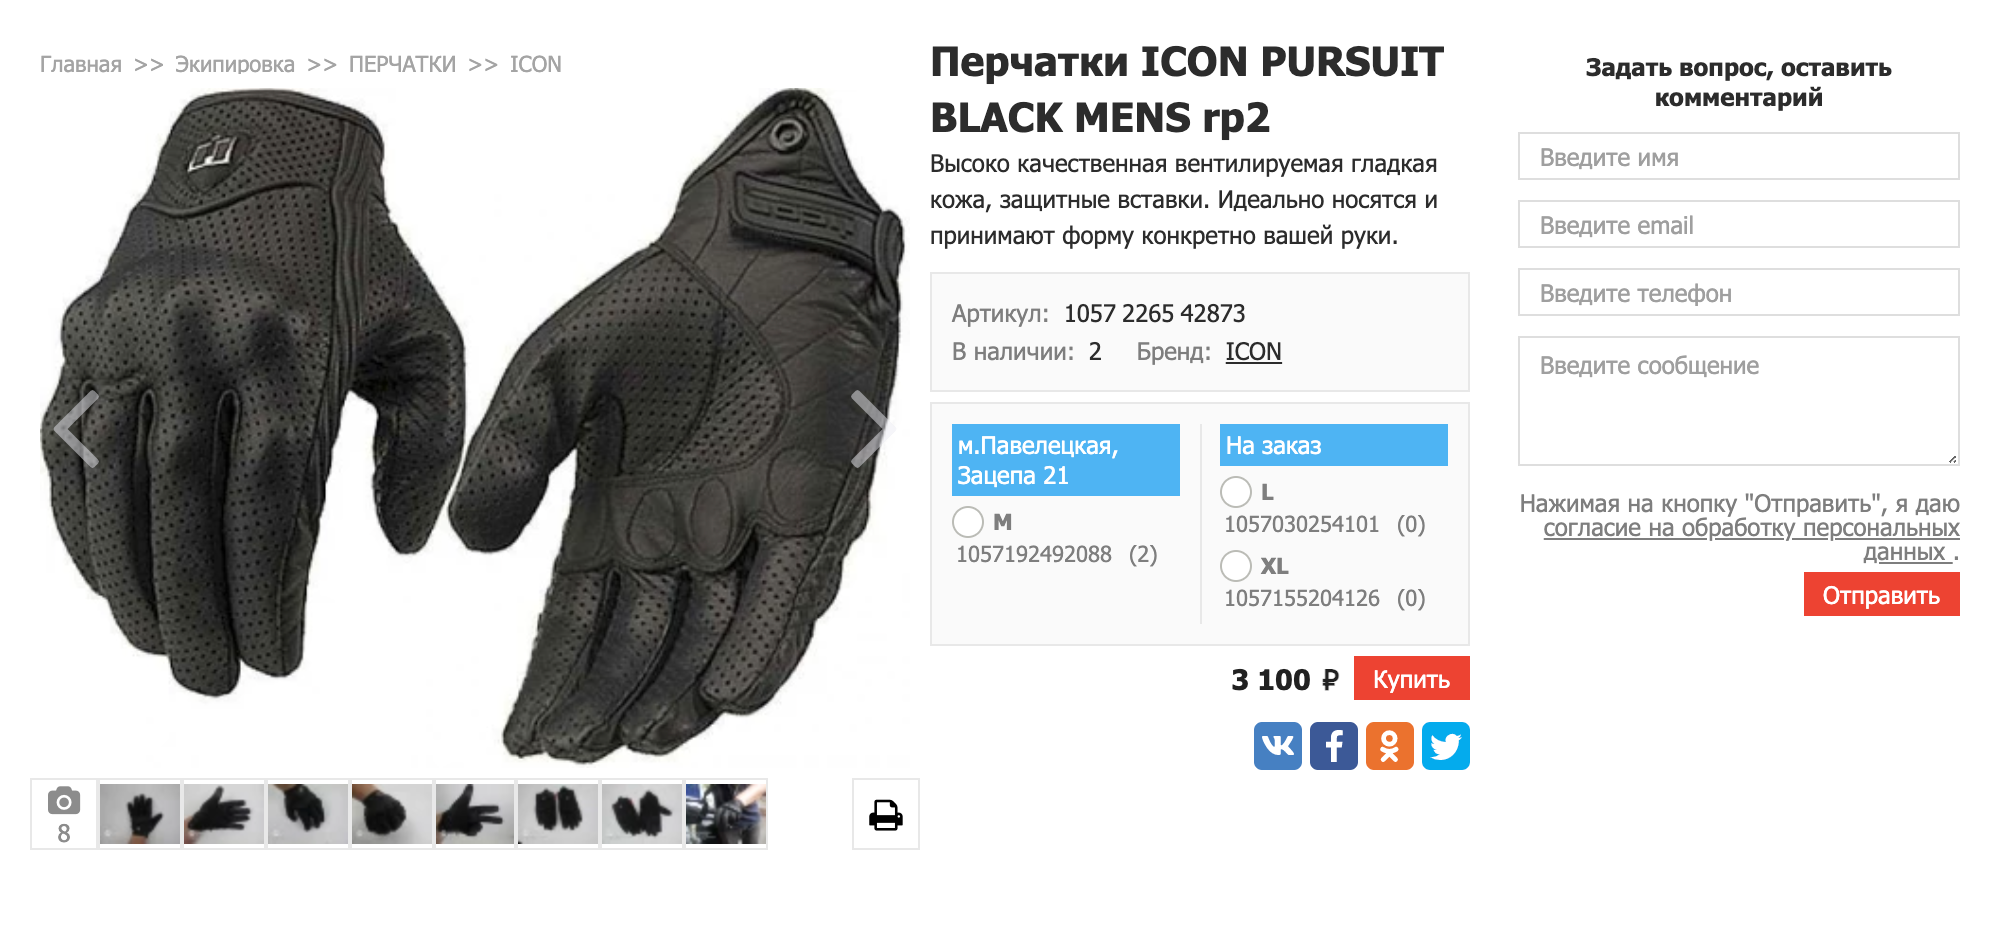 Эти перчатки тоже хорошие, но брендовые и стоят дороже. Источник: «Юниверсал моторс»